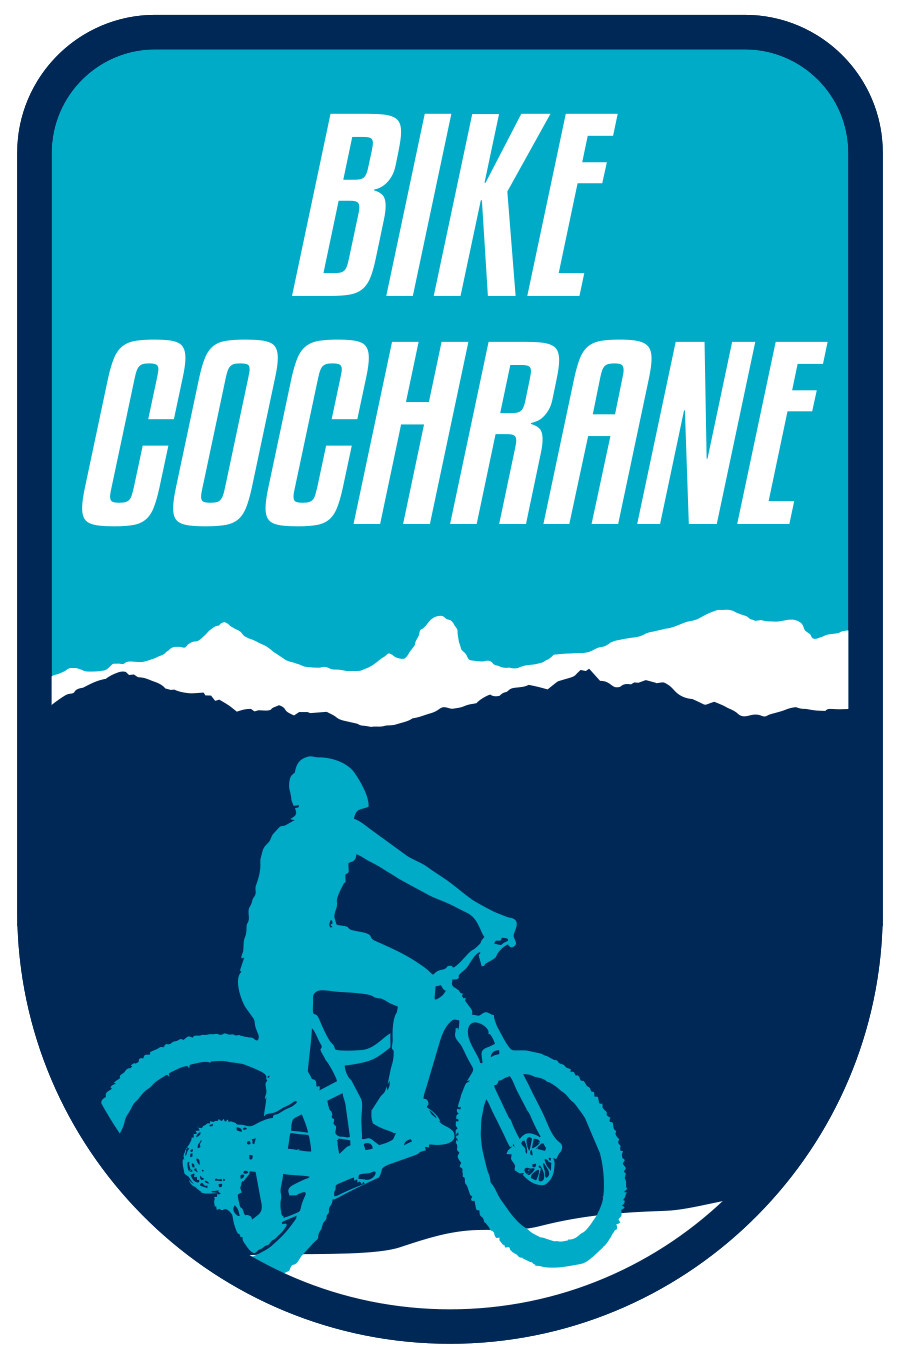 Bike Cochrane